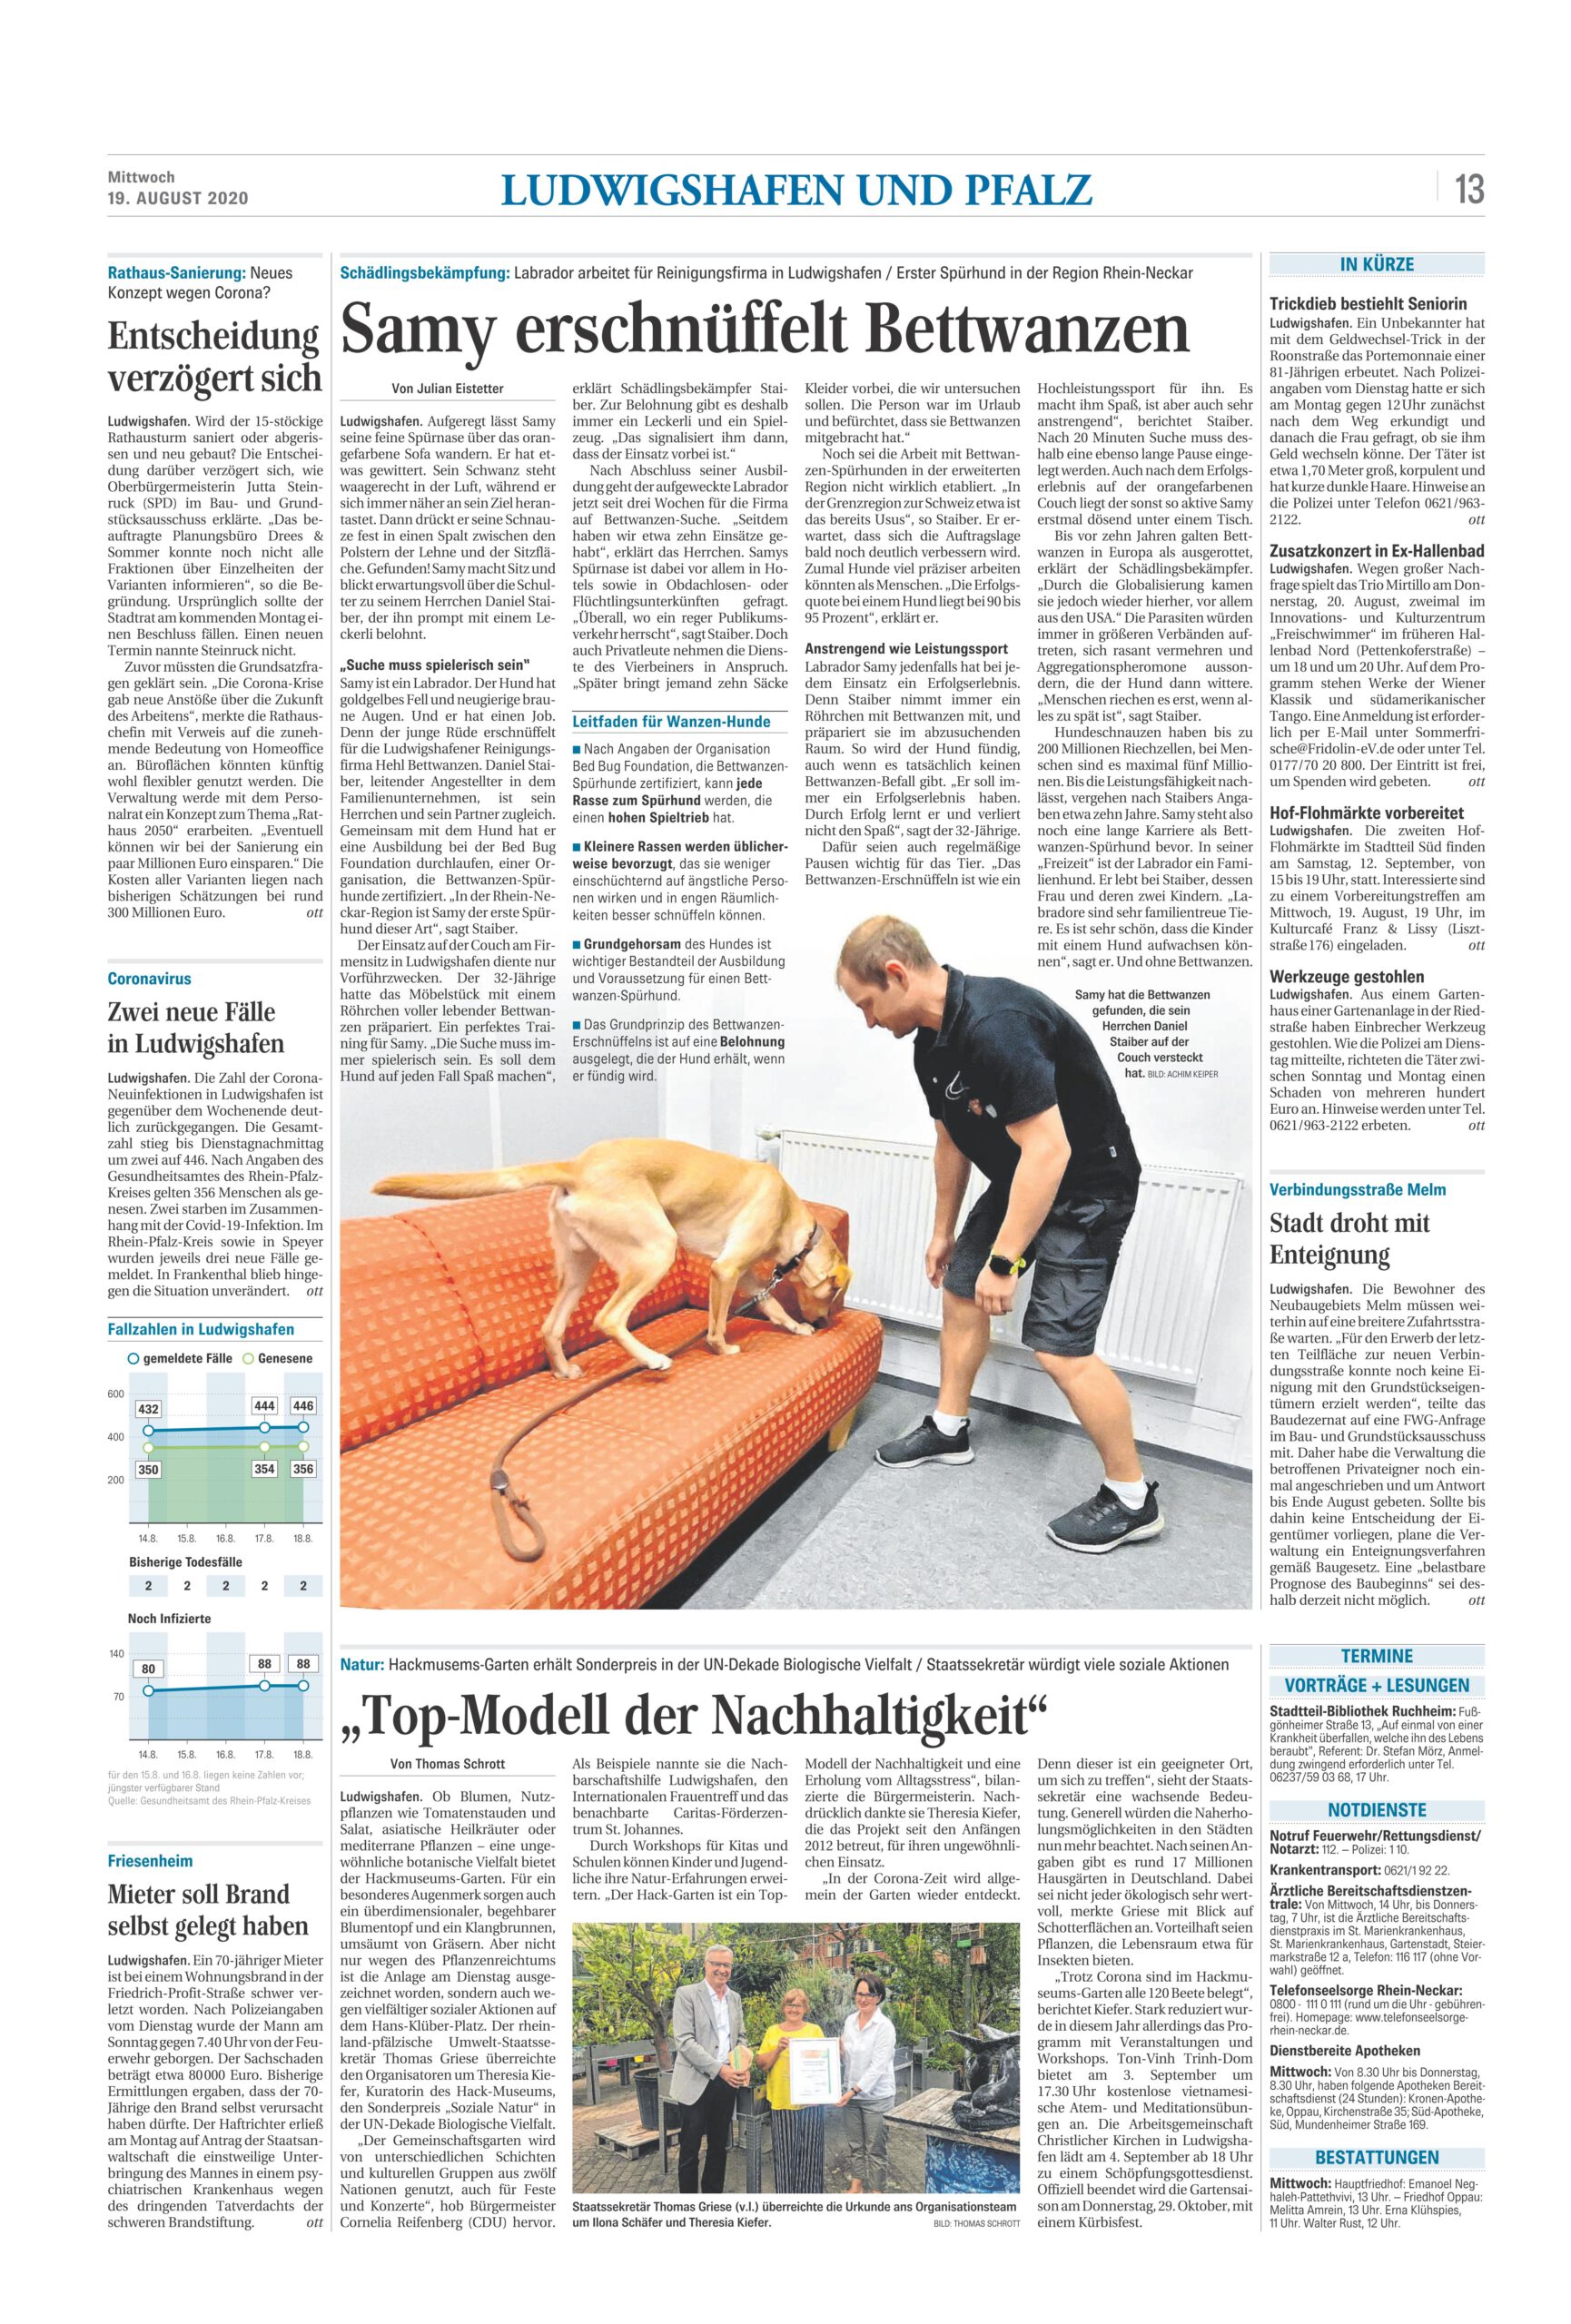 Bericht in Tageszeitung Rheinpfalz vom 19.08.20